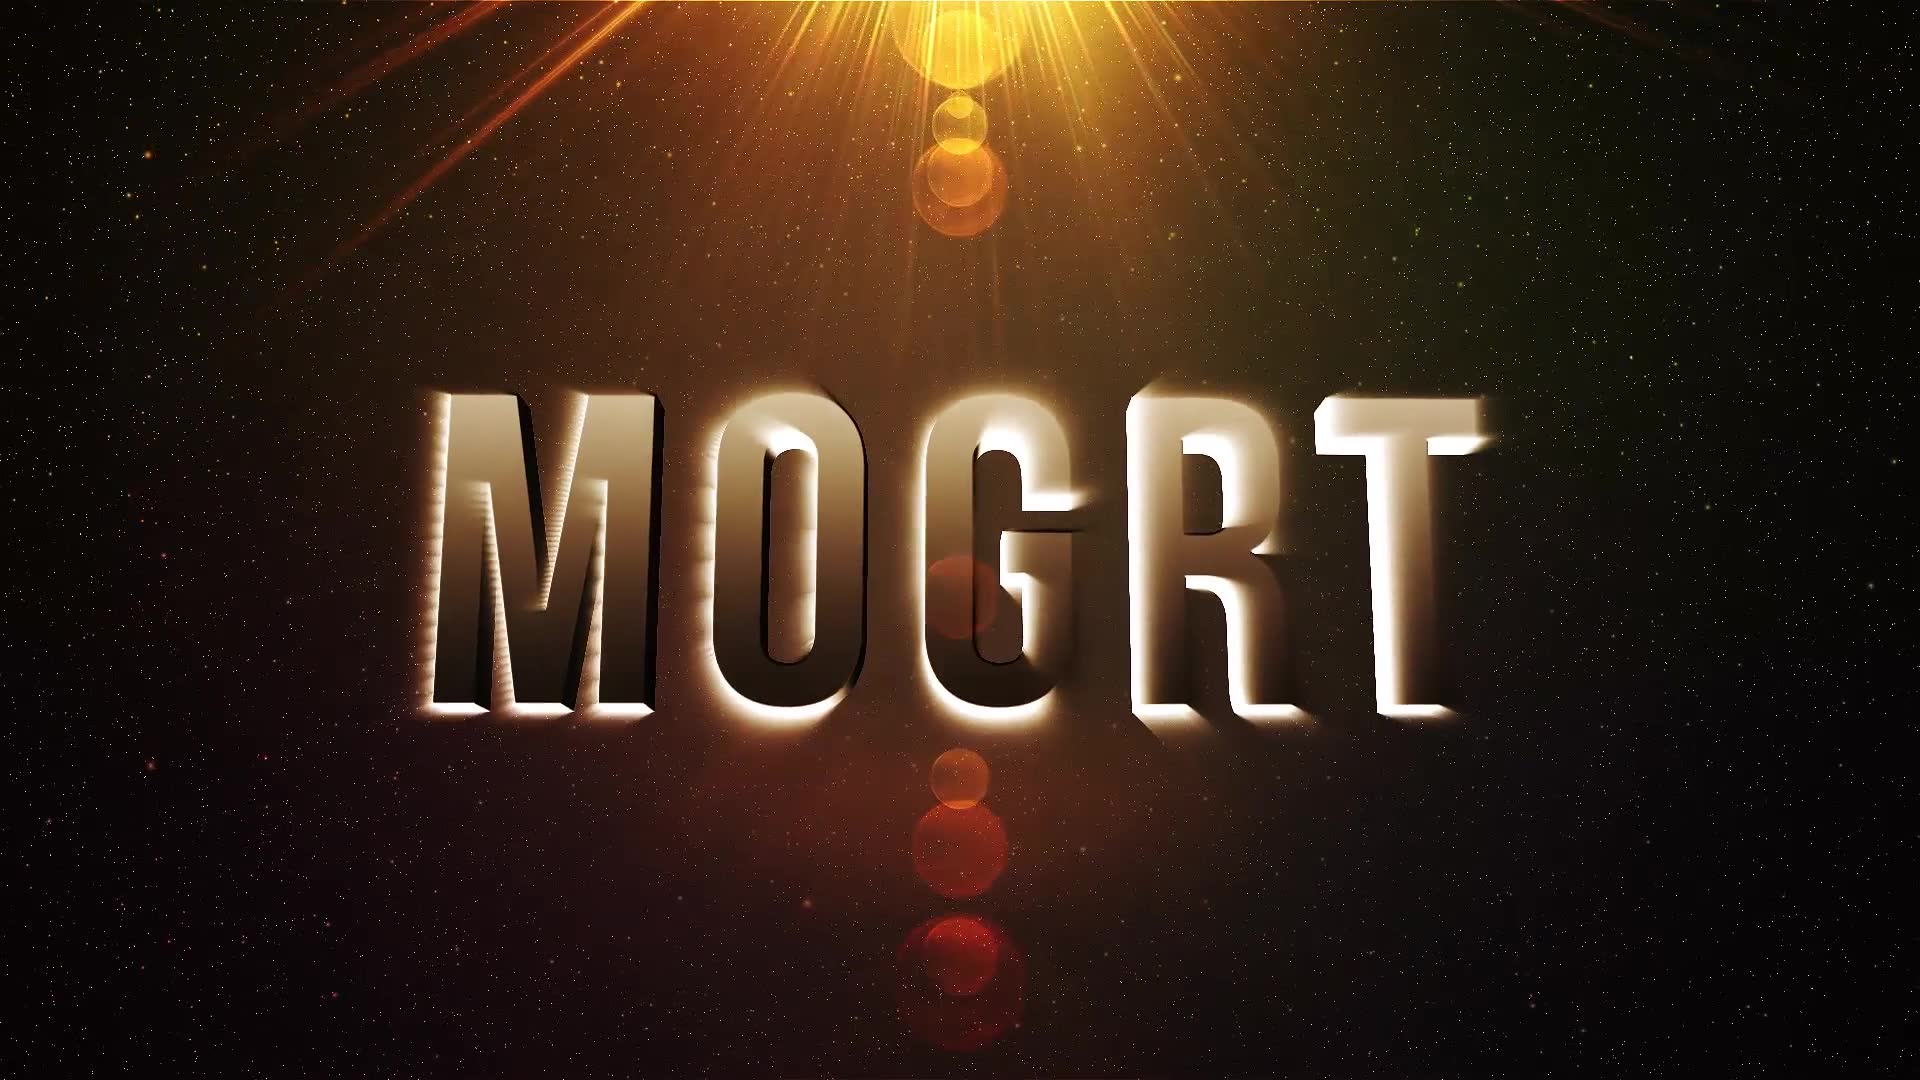 Epic Title Intro (mogrt) Videohive 23516202 Premiere Pro Image 6